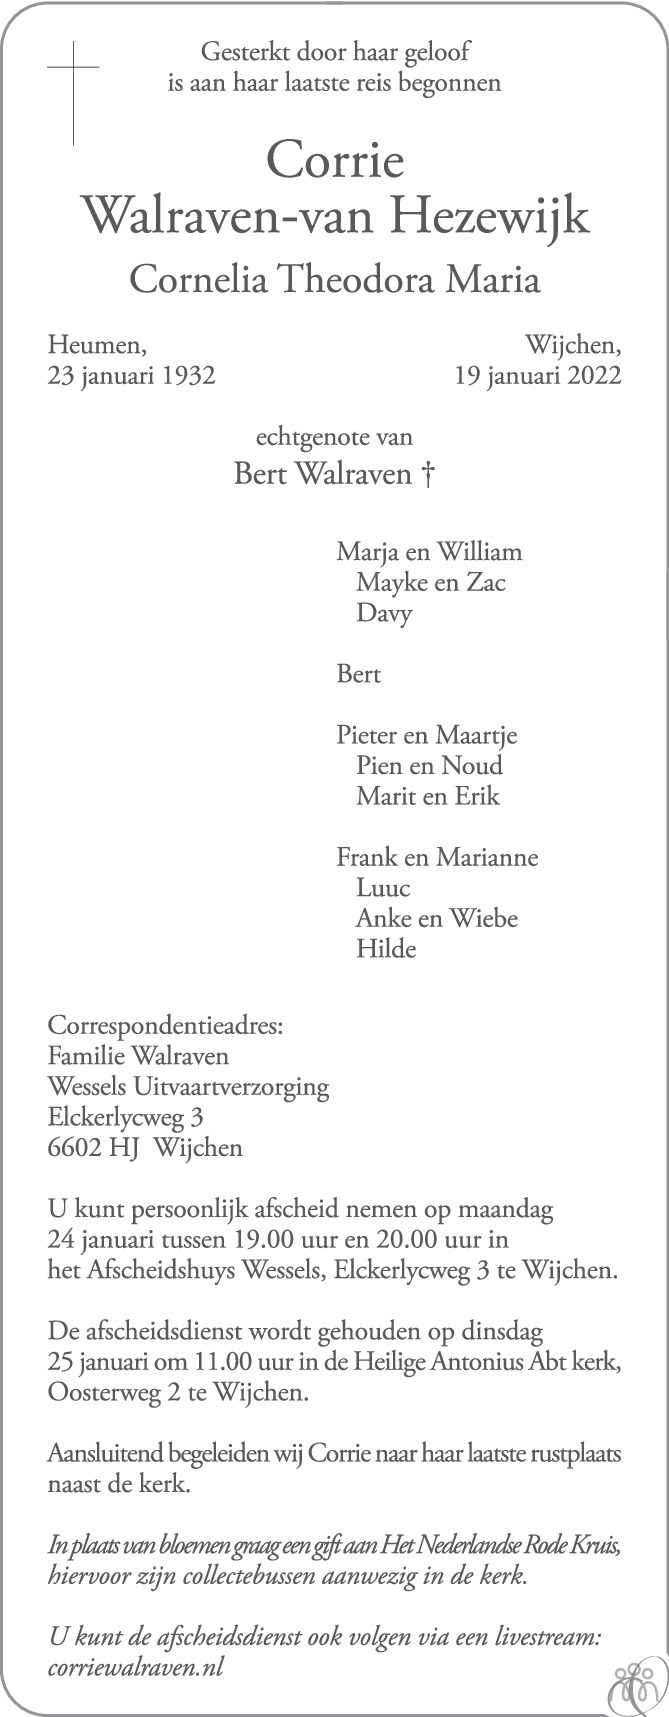 Overlijdensbericht van Corrie (Cornelia Theodora Maria) Walraven-van Hezewijk in de Gelderlander